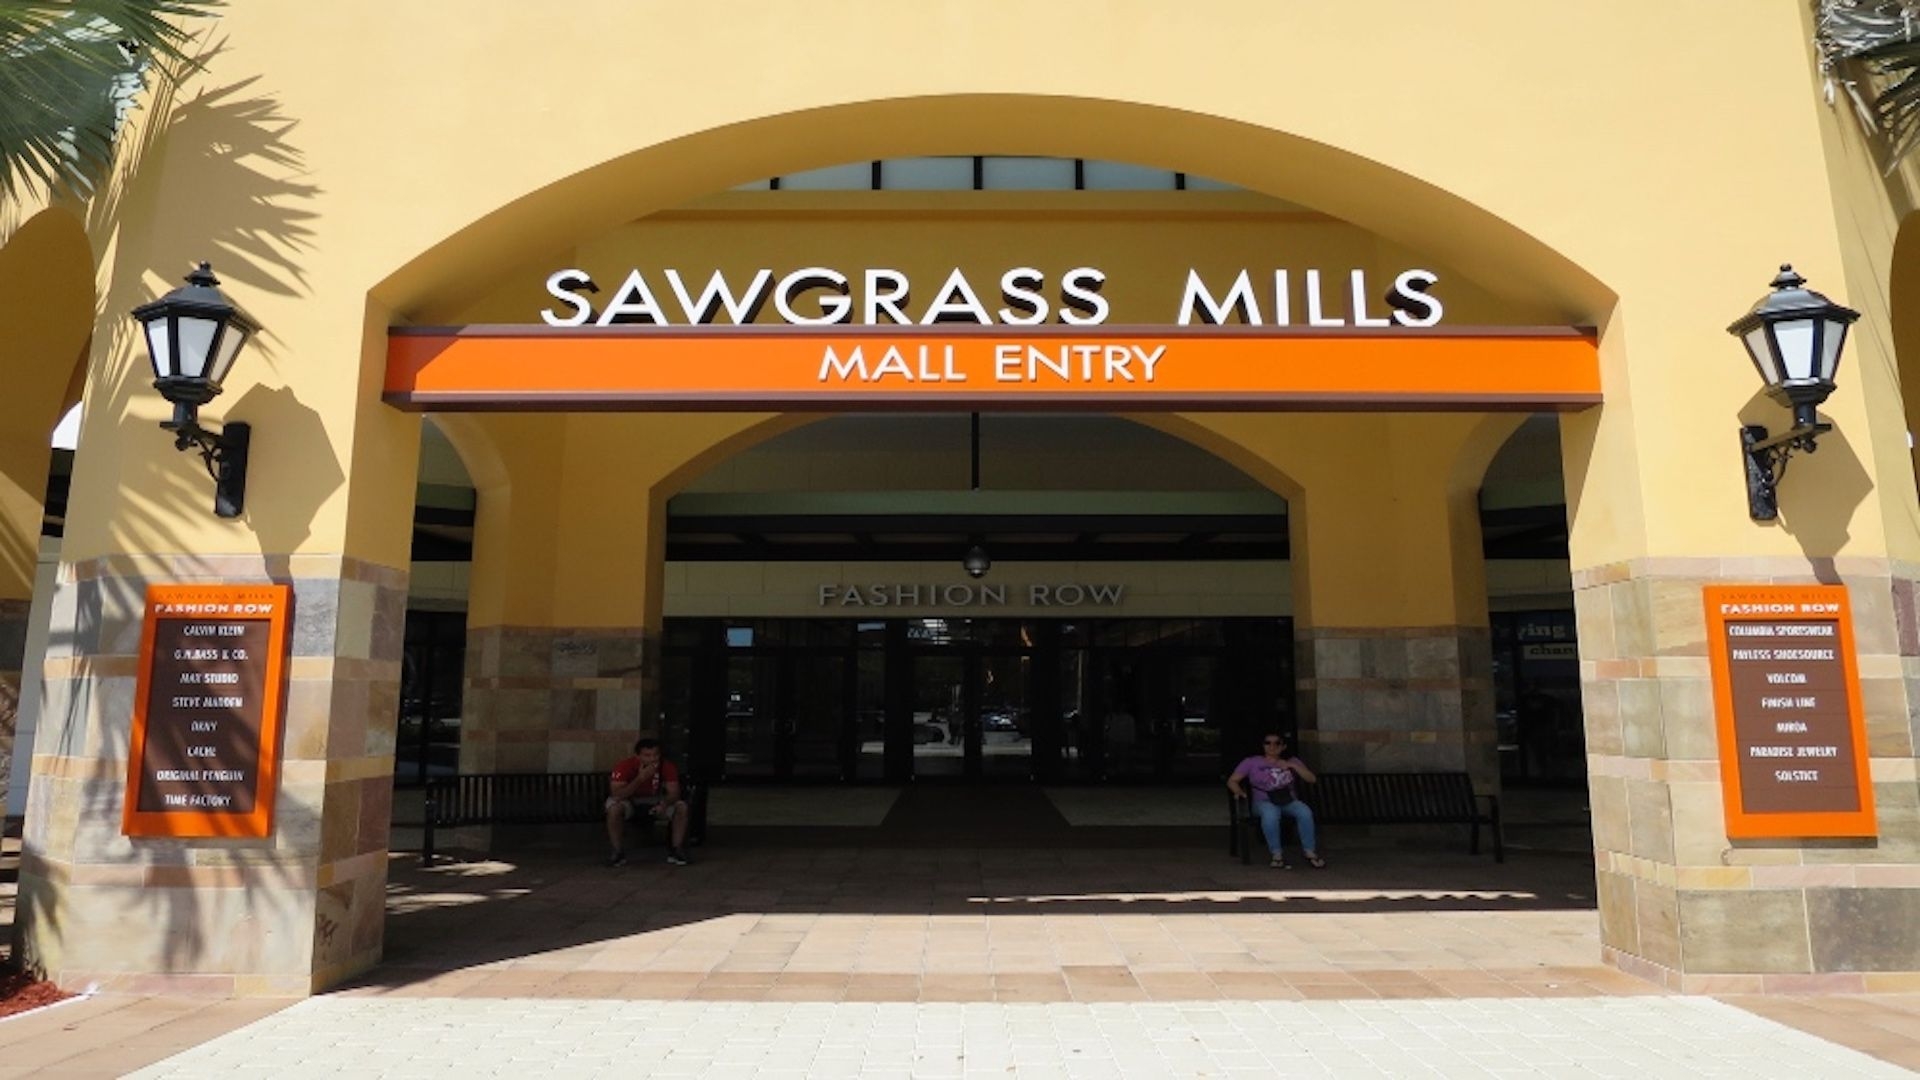 Sawgrass Mills in Miami